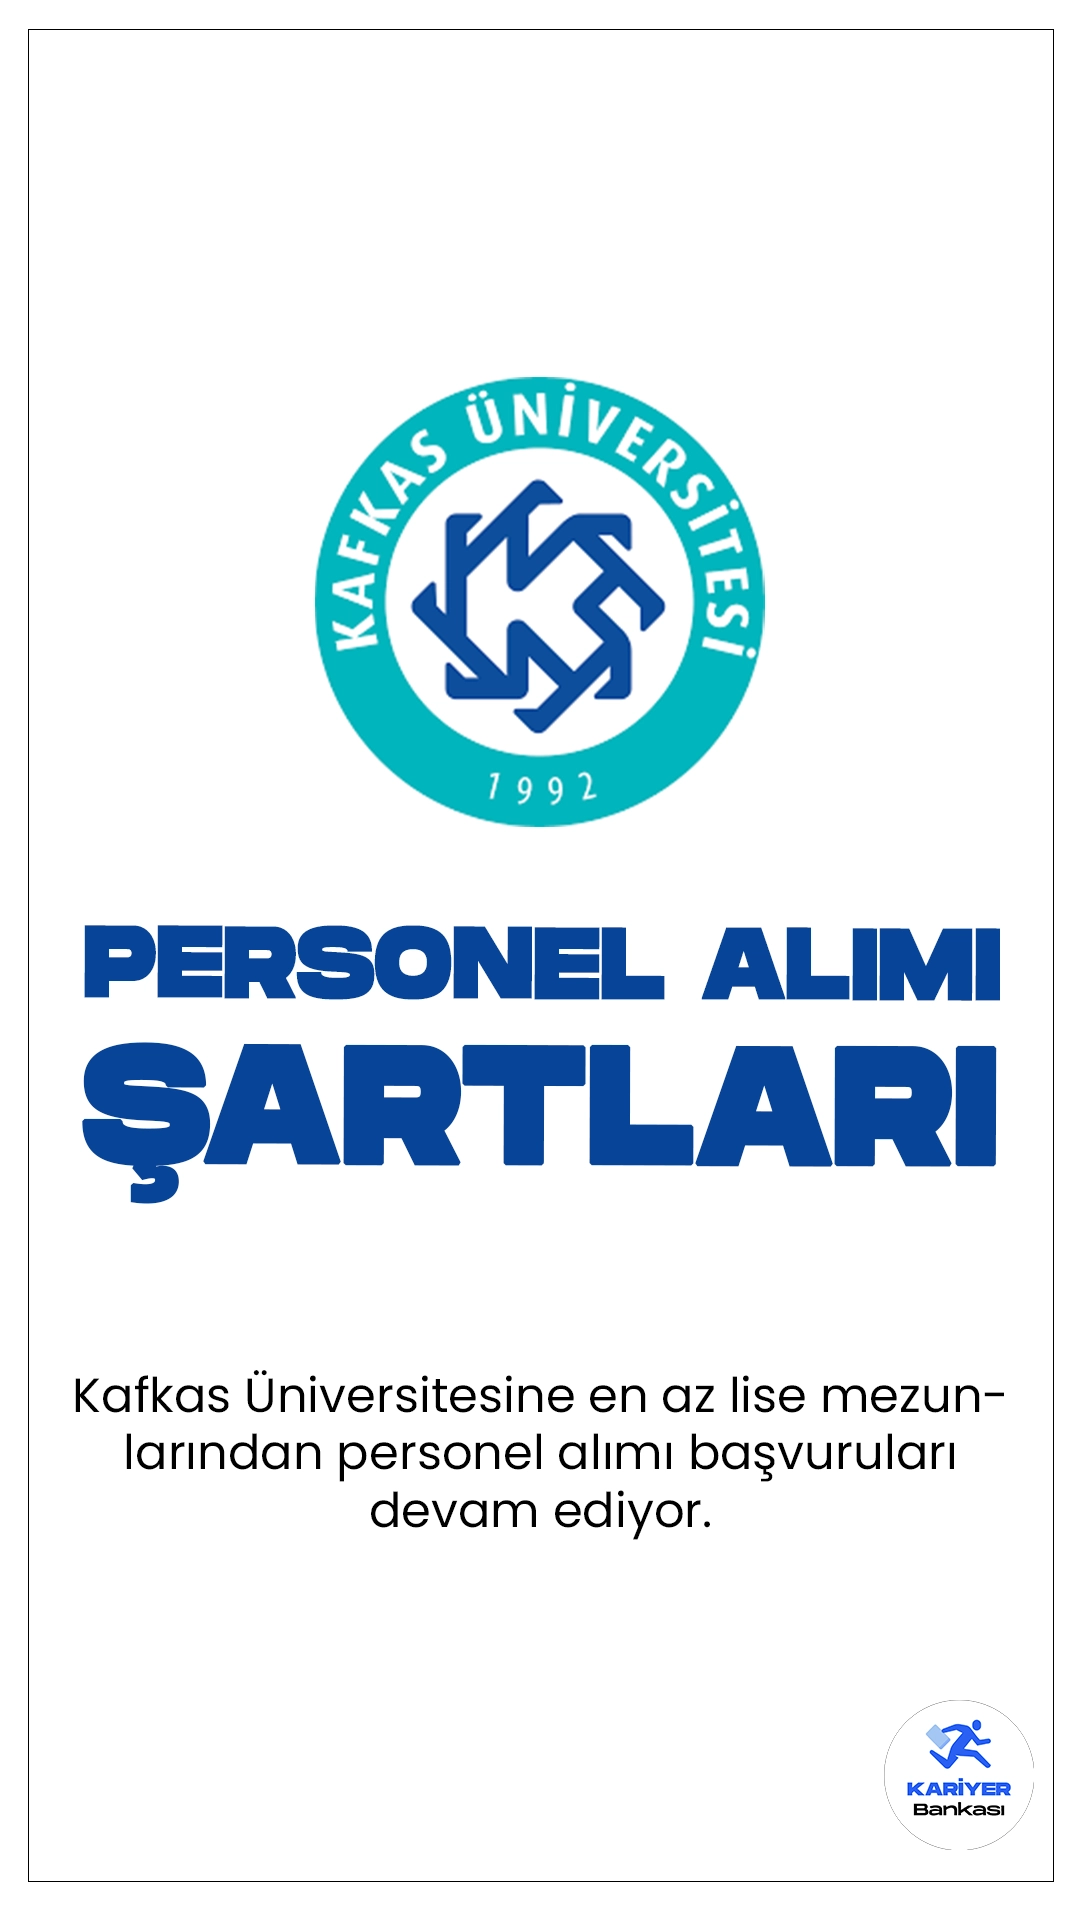 Kafkas Üniversitesi personel alımı başvuruları devam ediyor. Başvuru şartları, kontenjan dağılımı ve başvuru bilgilerine dair detaylar bu haberimizde.